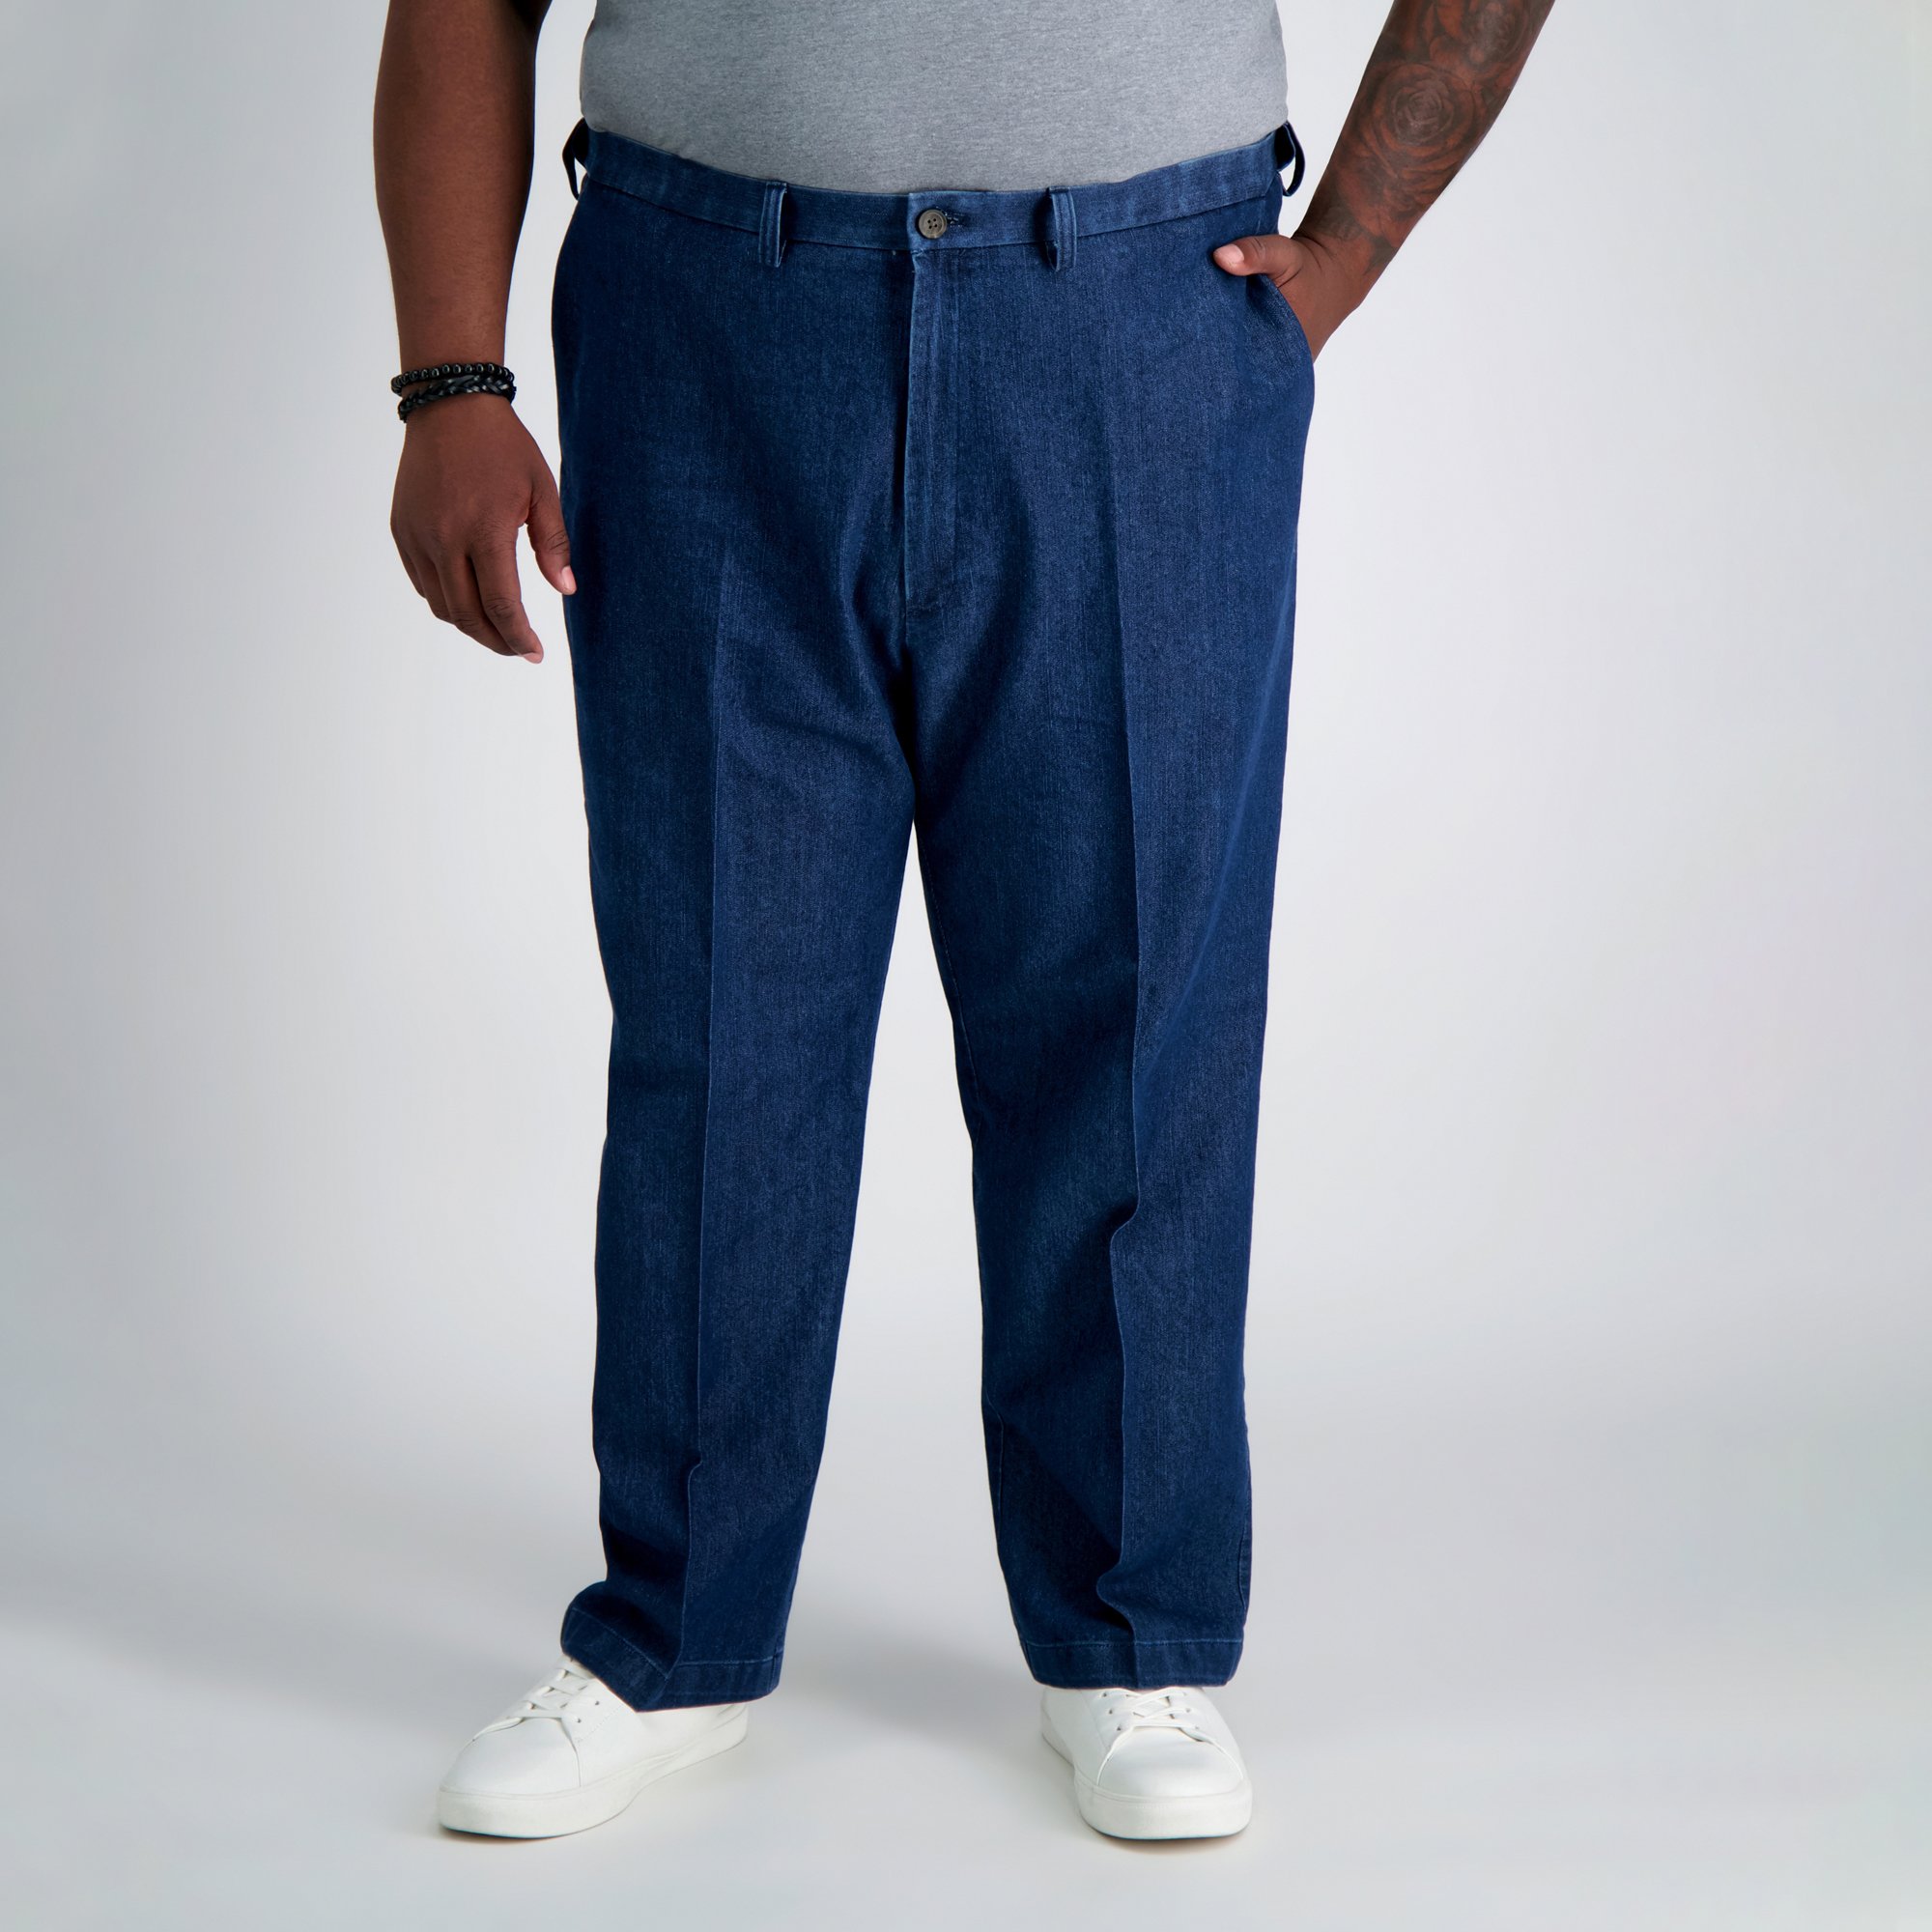 Jeans Pants Stretcher Make Bigger Wider Larger Waist 30"-59" Trouser Adjustable 